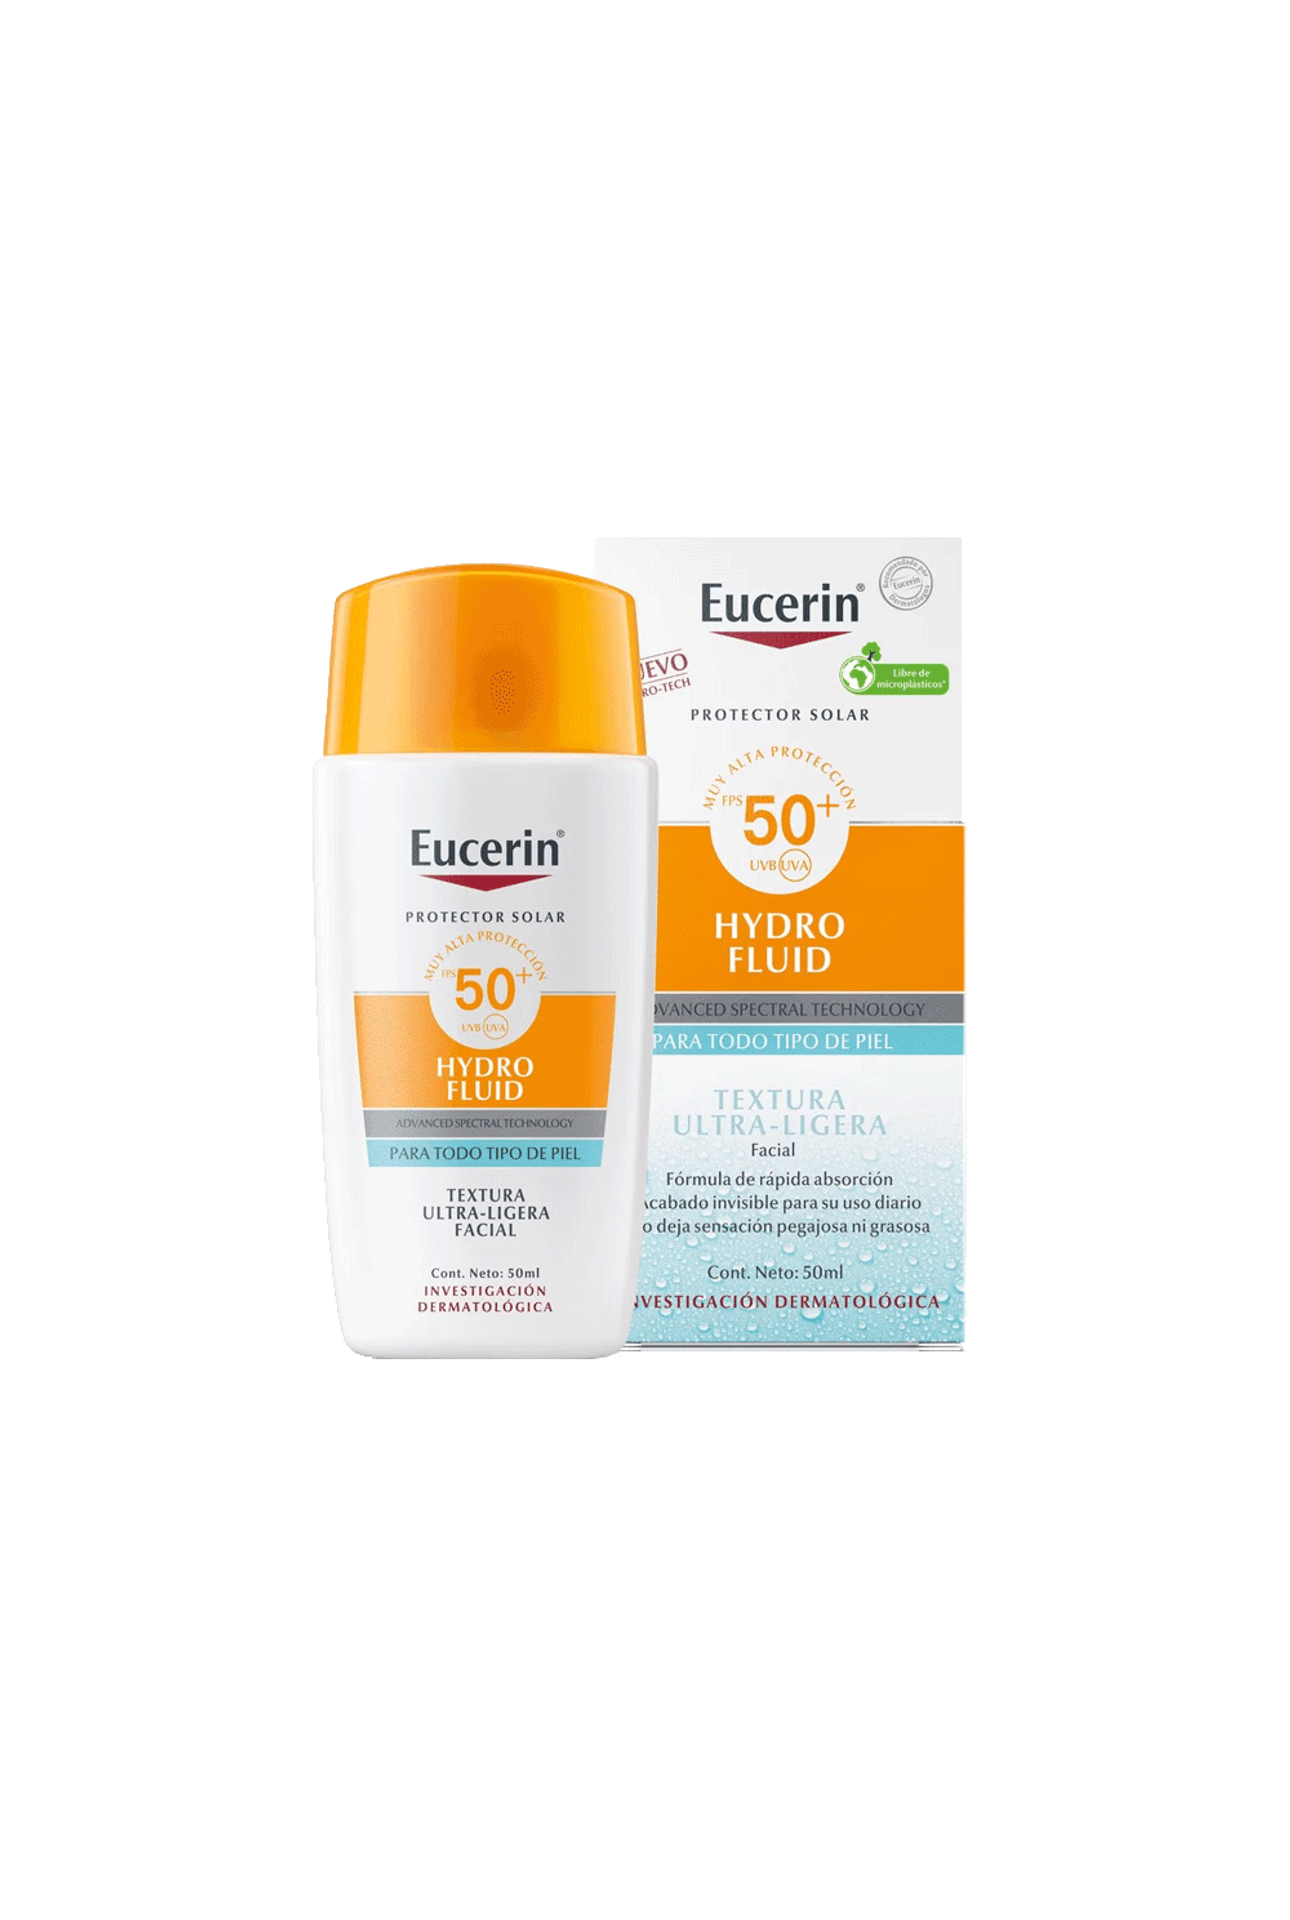 Eucerin-Eucerin-Sun-Sensitive-Protect-Face-Sun-Fluid-SPF50--x-50-ml-4005900994776_img1